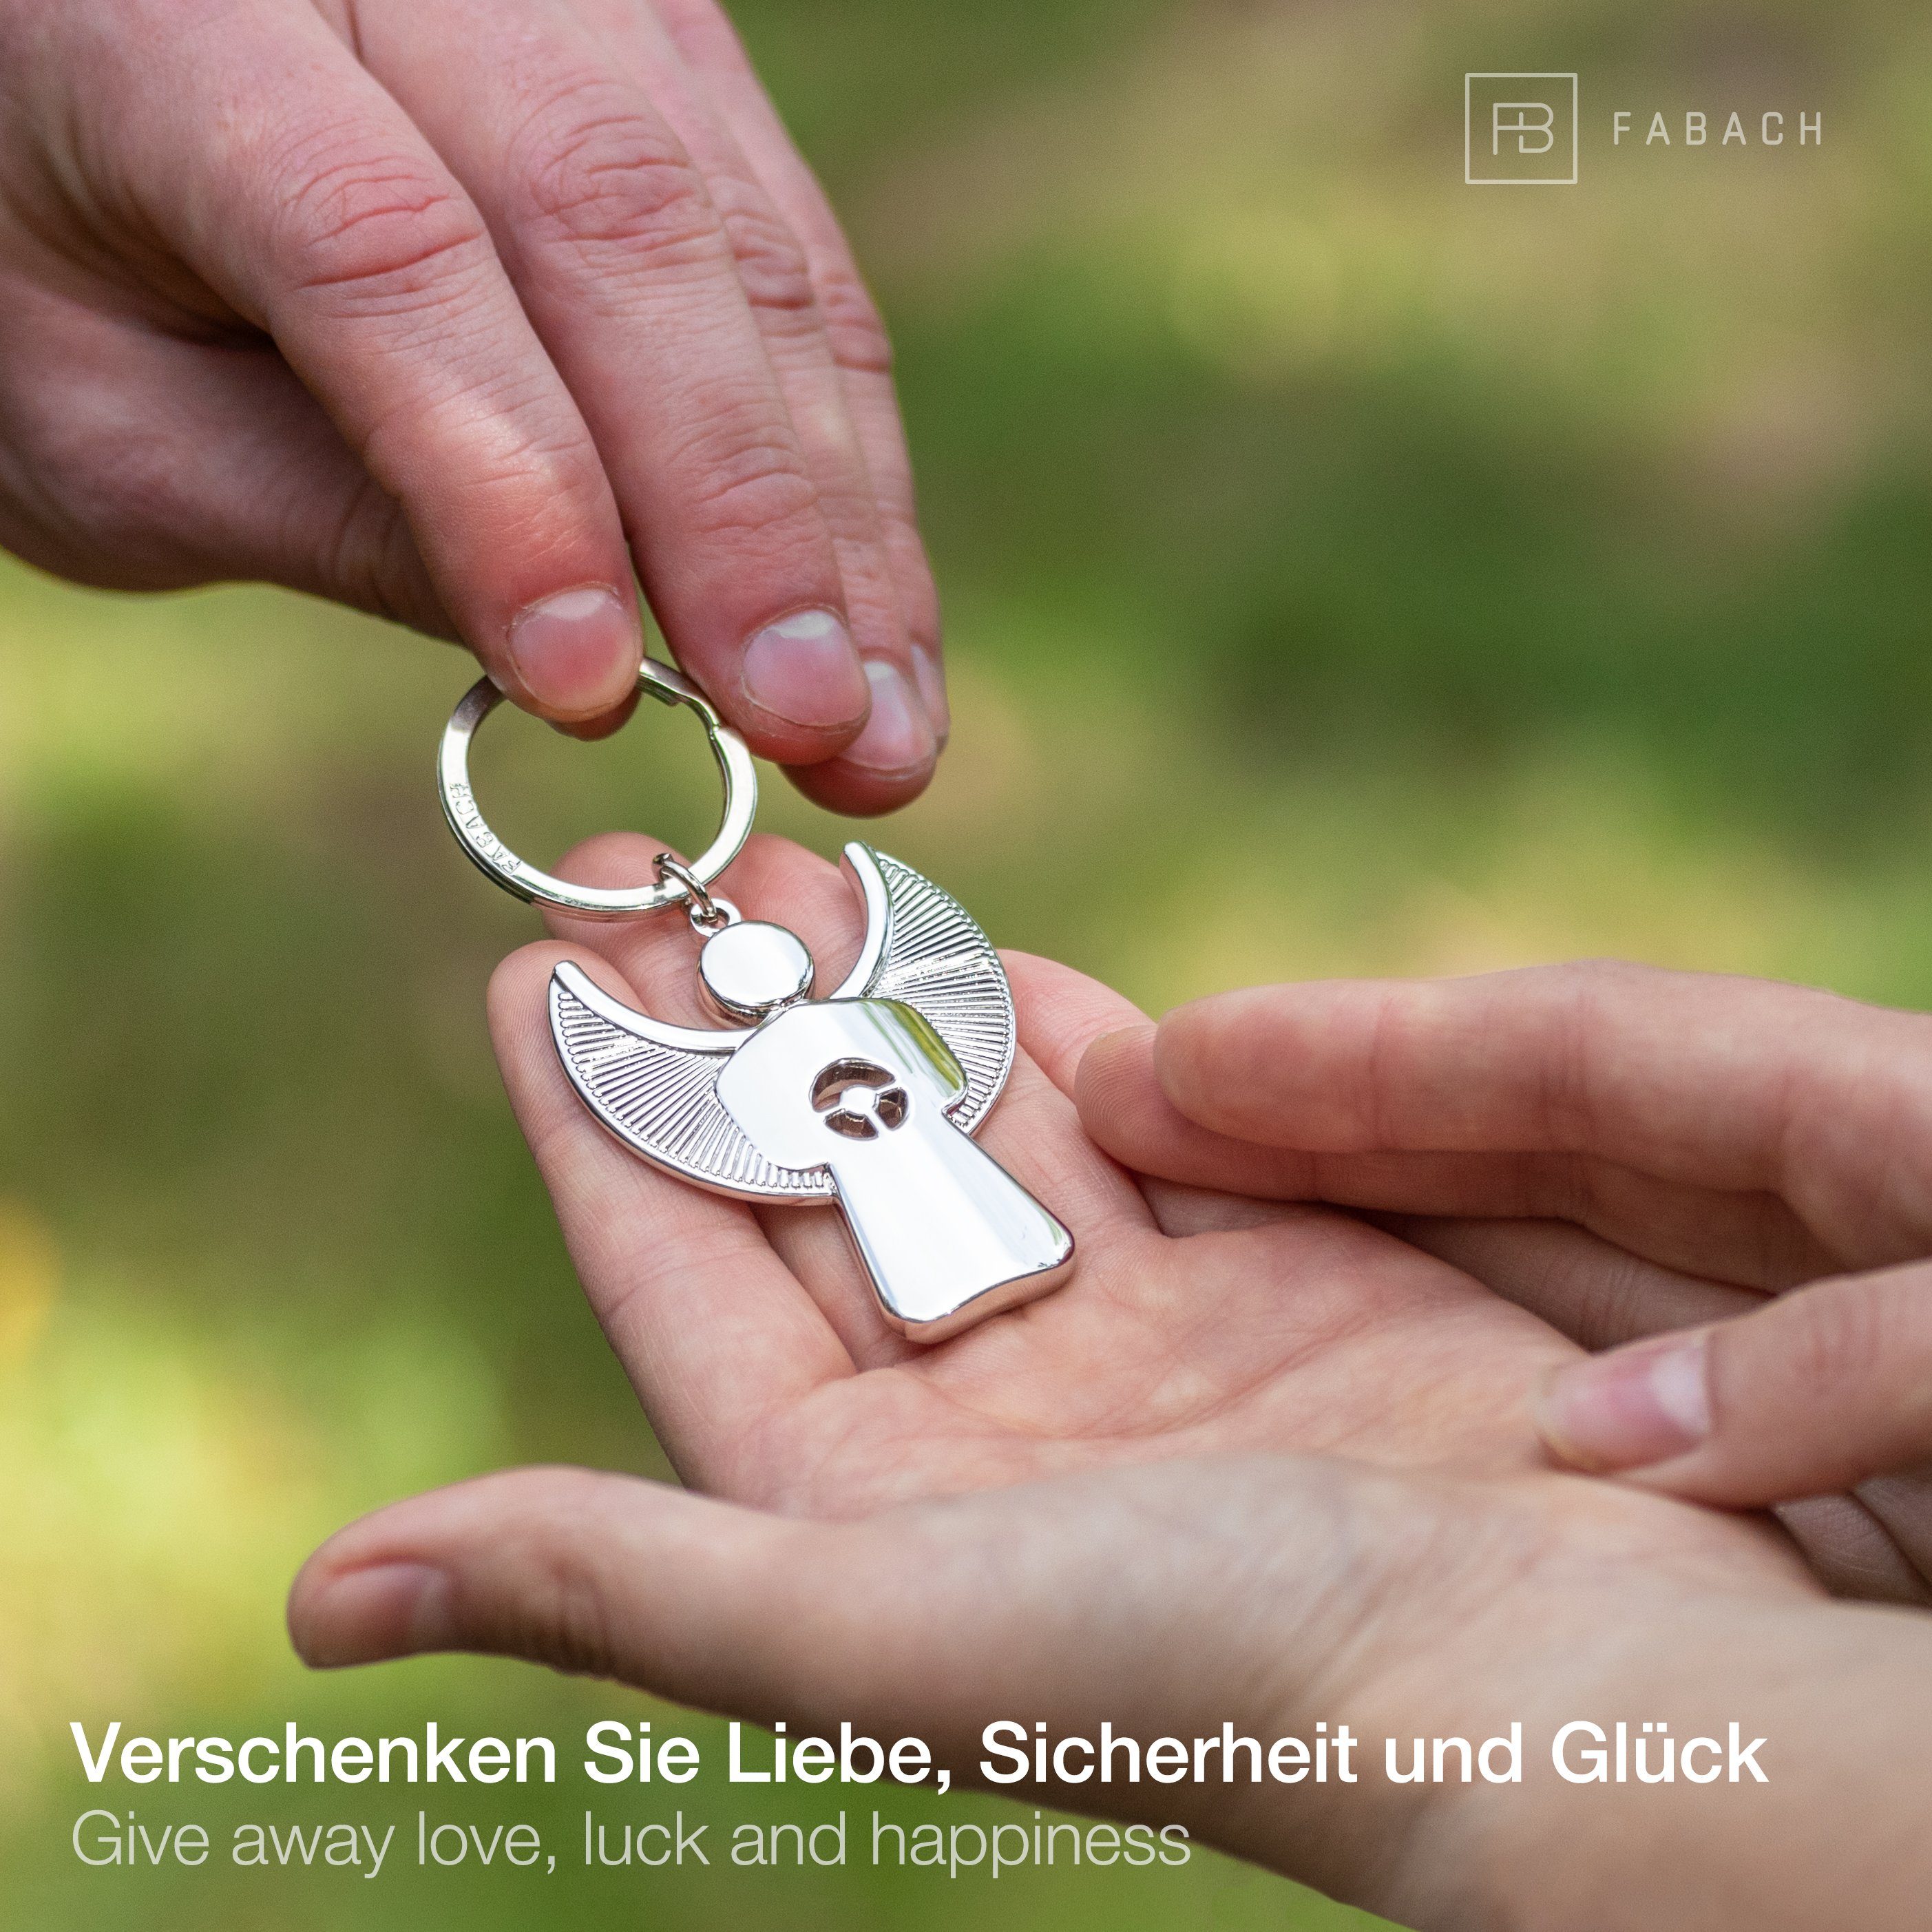 Glücksbringer Pikto FABACH mit Matt Lenkrad Geschenk Schutzengel Silber Schlüsselanhänger - Führerschein